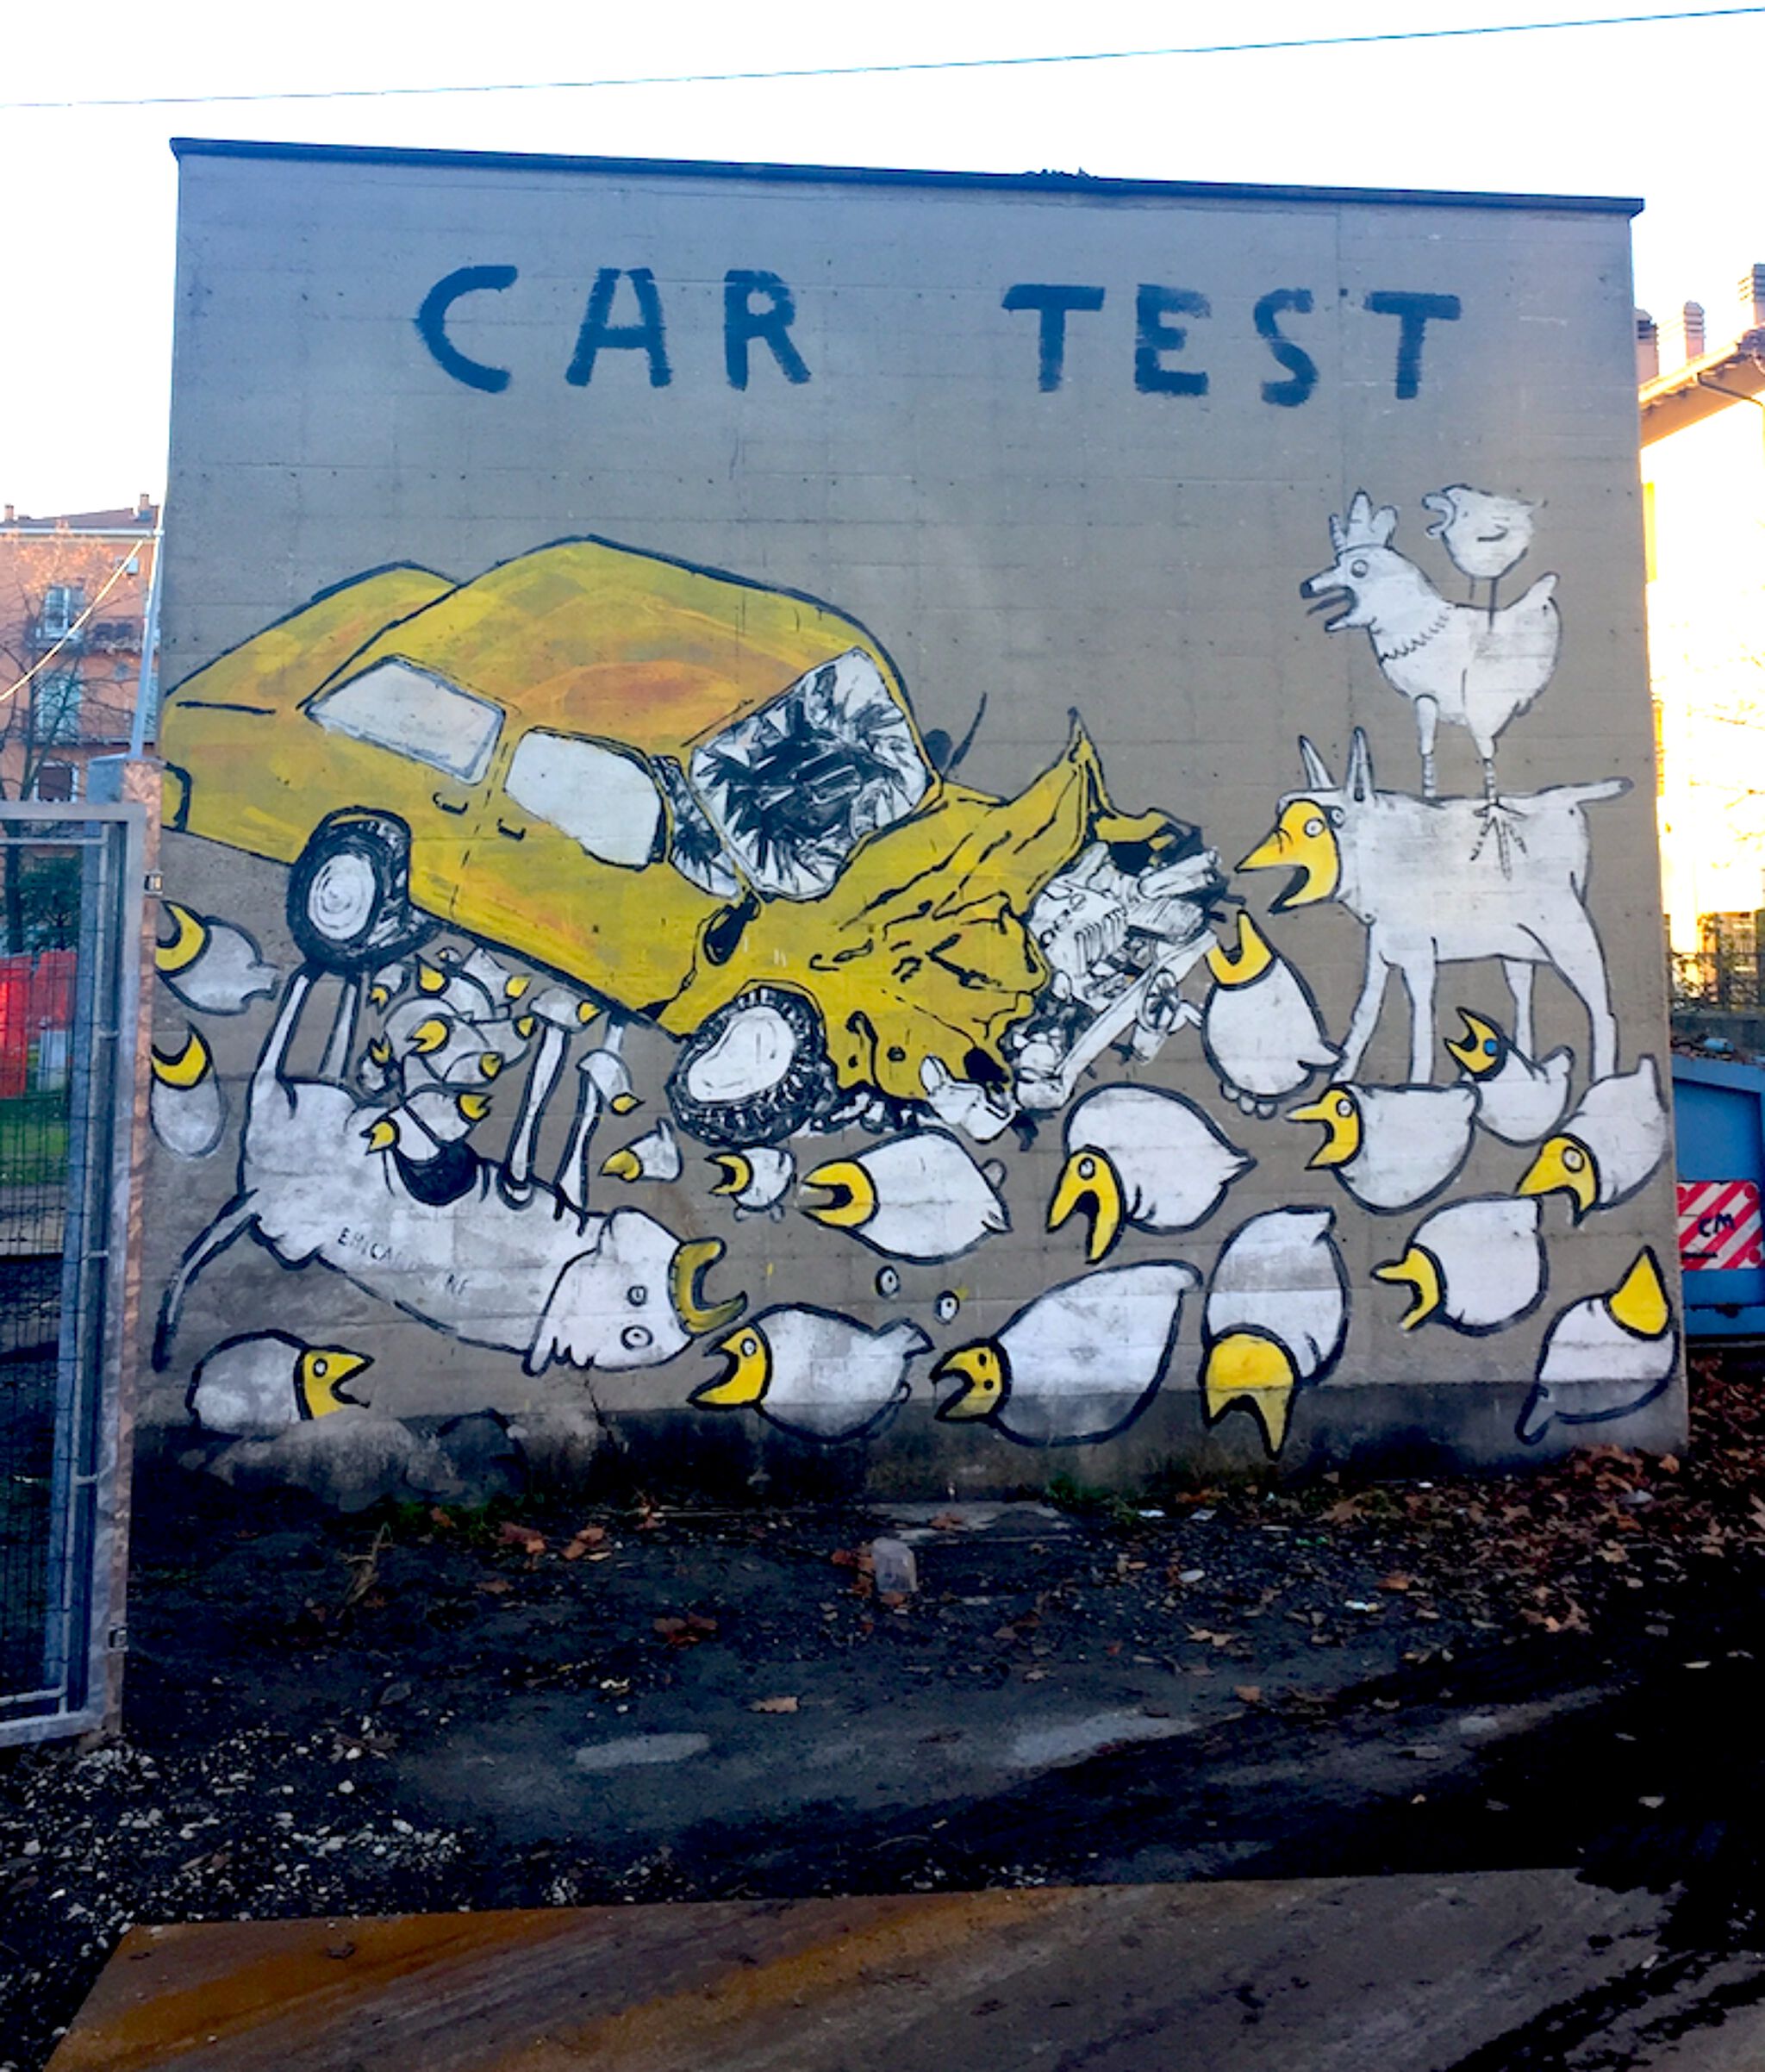 Erica Il Cane&mdash;Car test - 2013